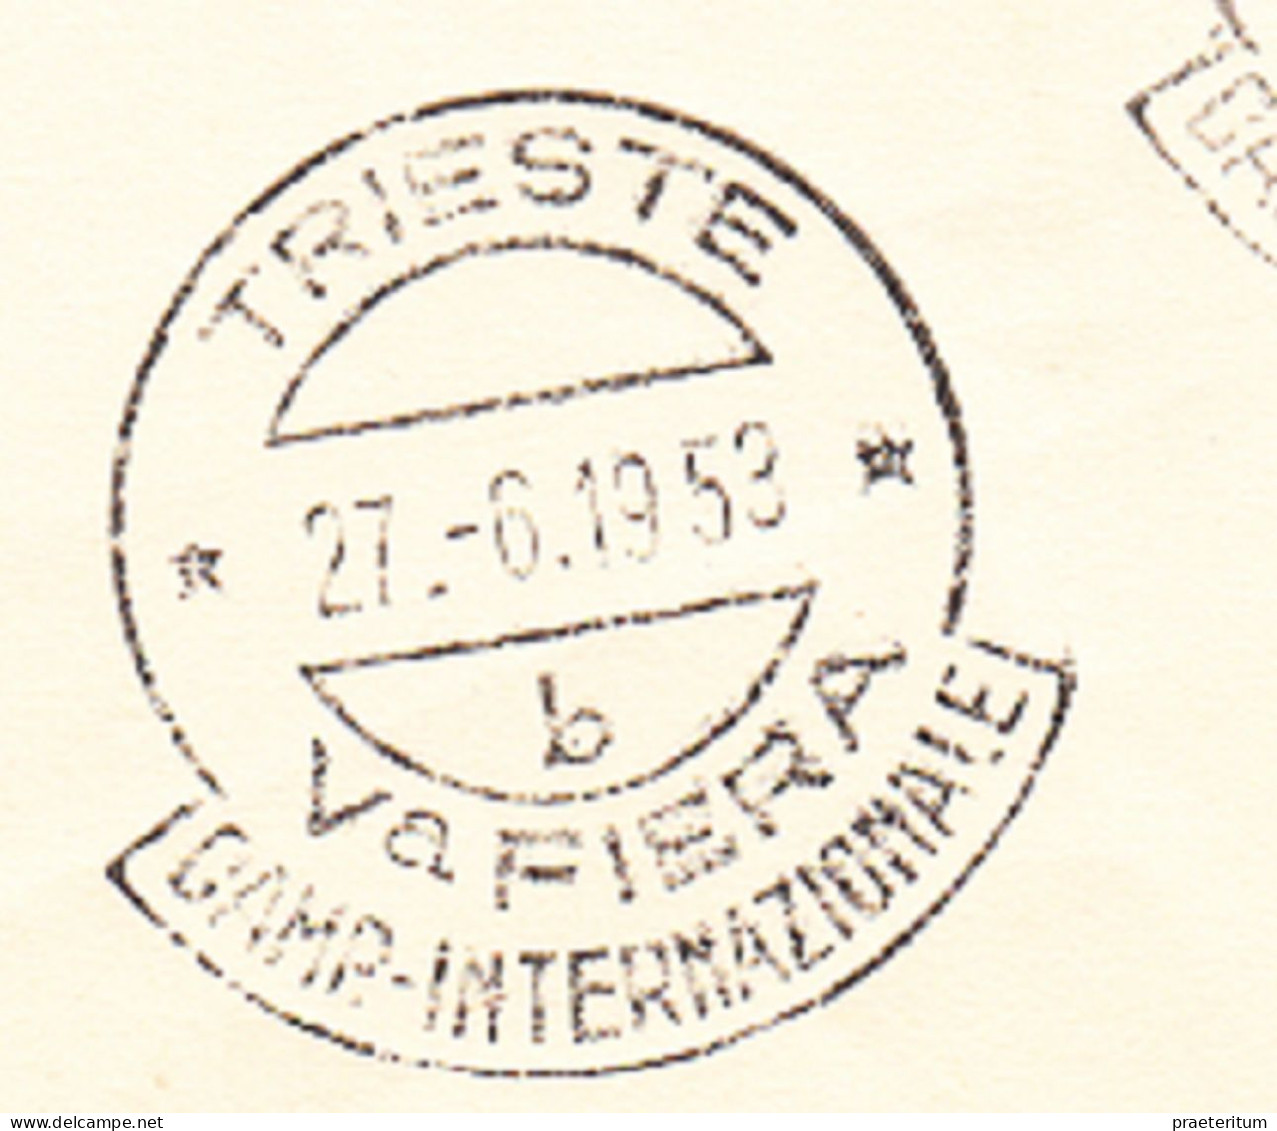 ITALIA Trieste Zone A - Fiera Di Trieste FDC, 27 VI 1953 - Marcofilía